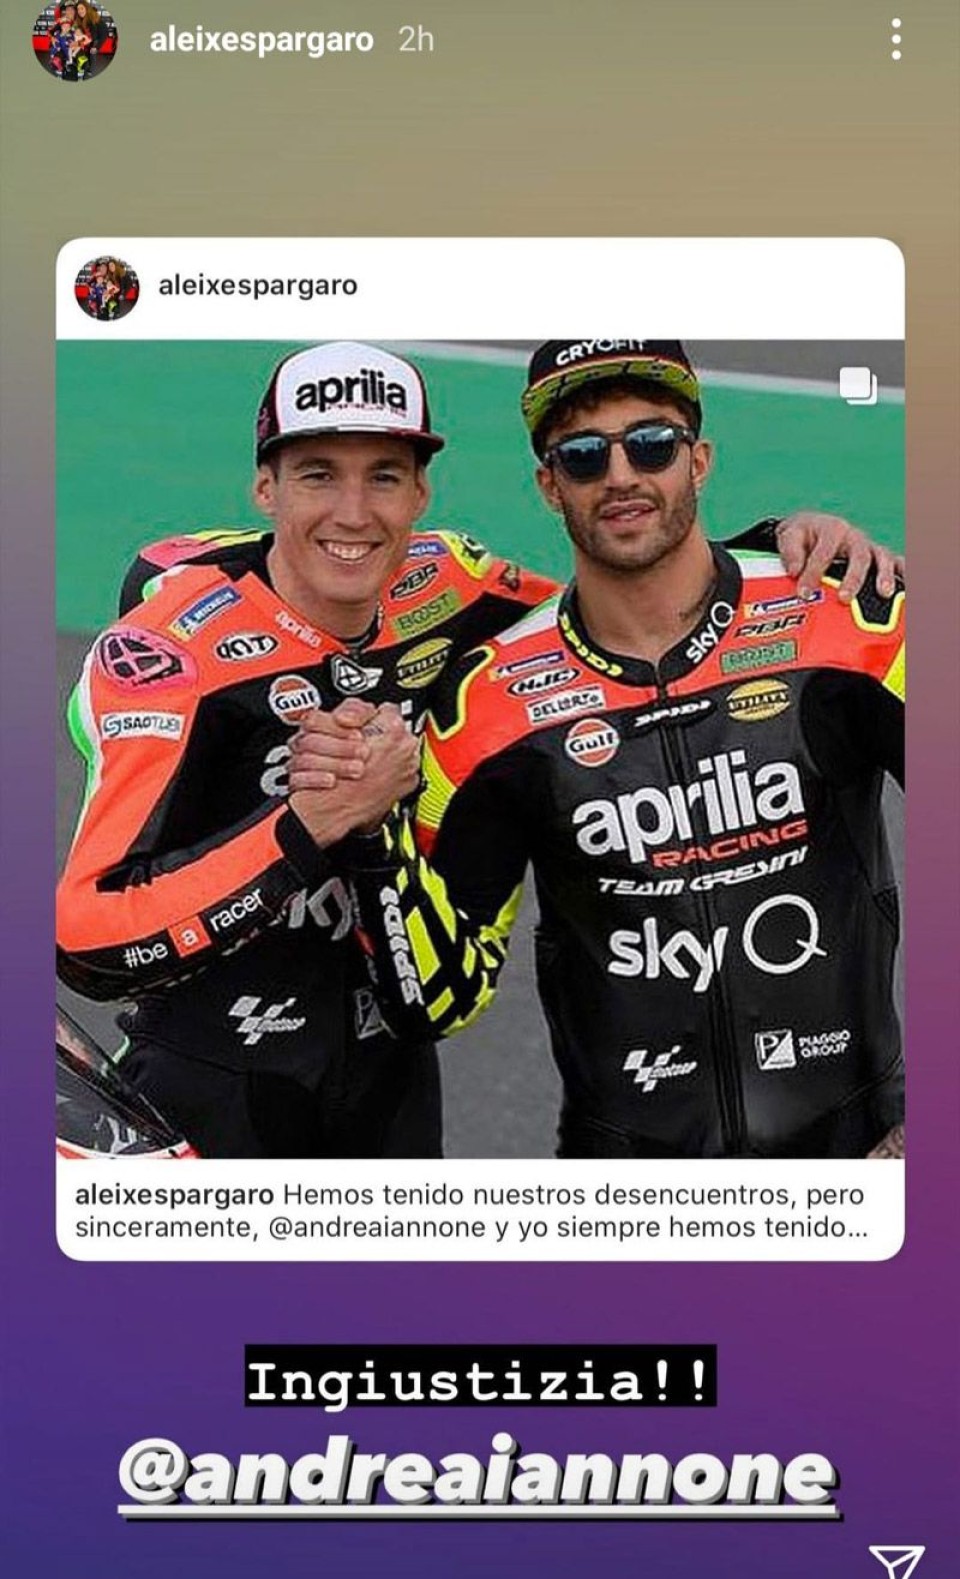 MotoGP: Aleix Espargaró defends Andrea Iannone: 